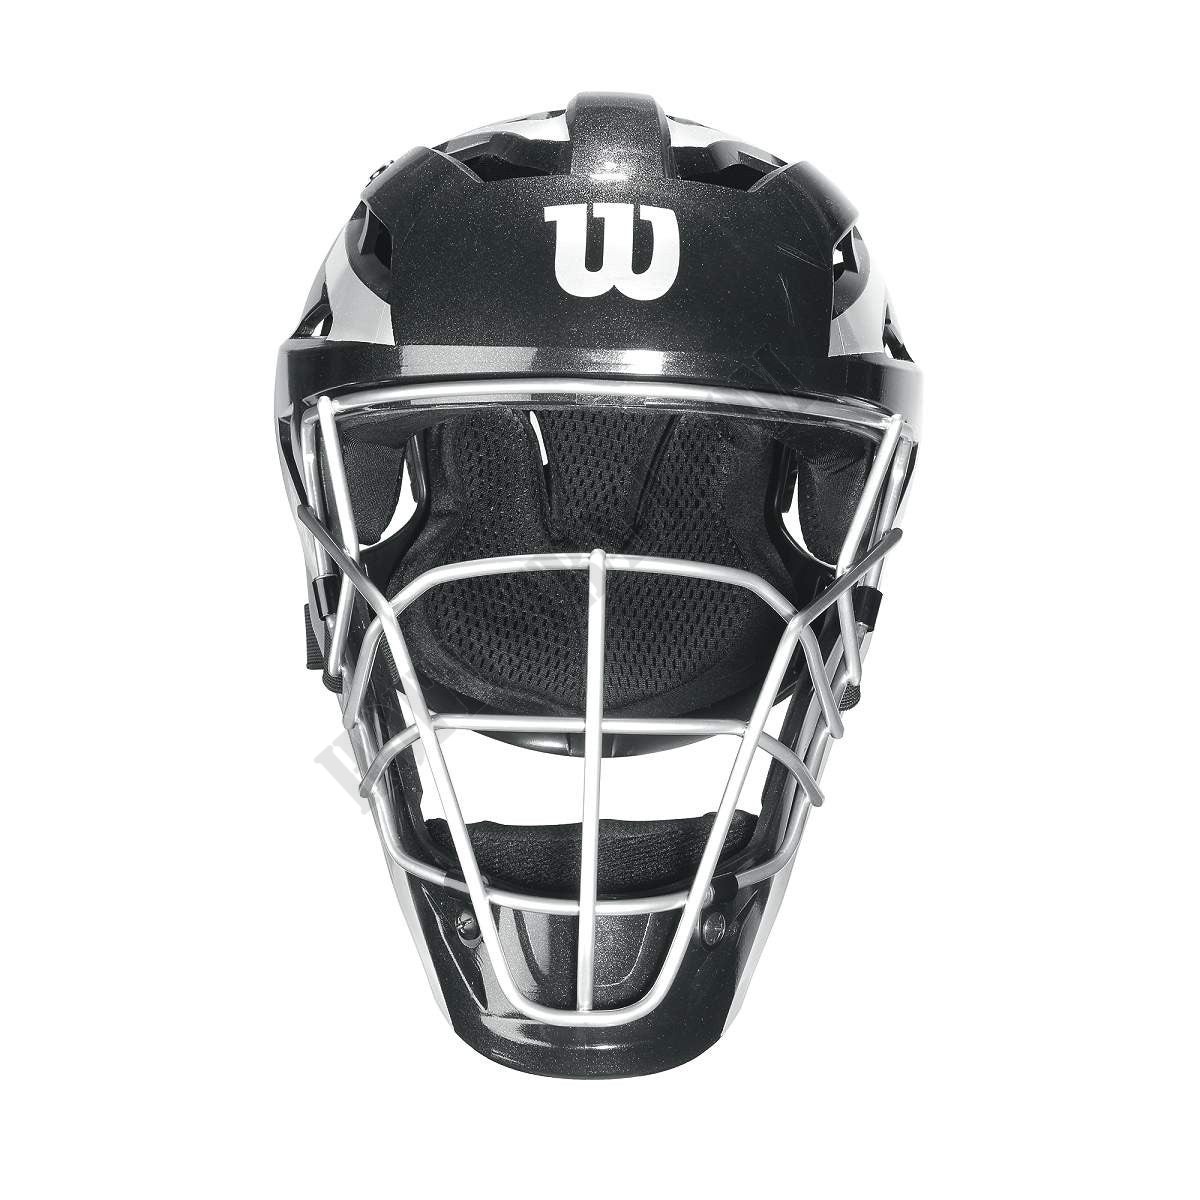 Pro Stock Catcher's Helmet - Wilson Discount Store - -2